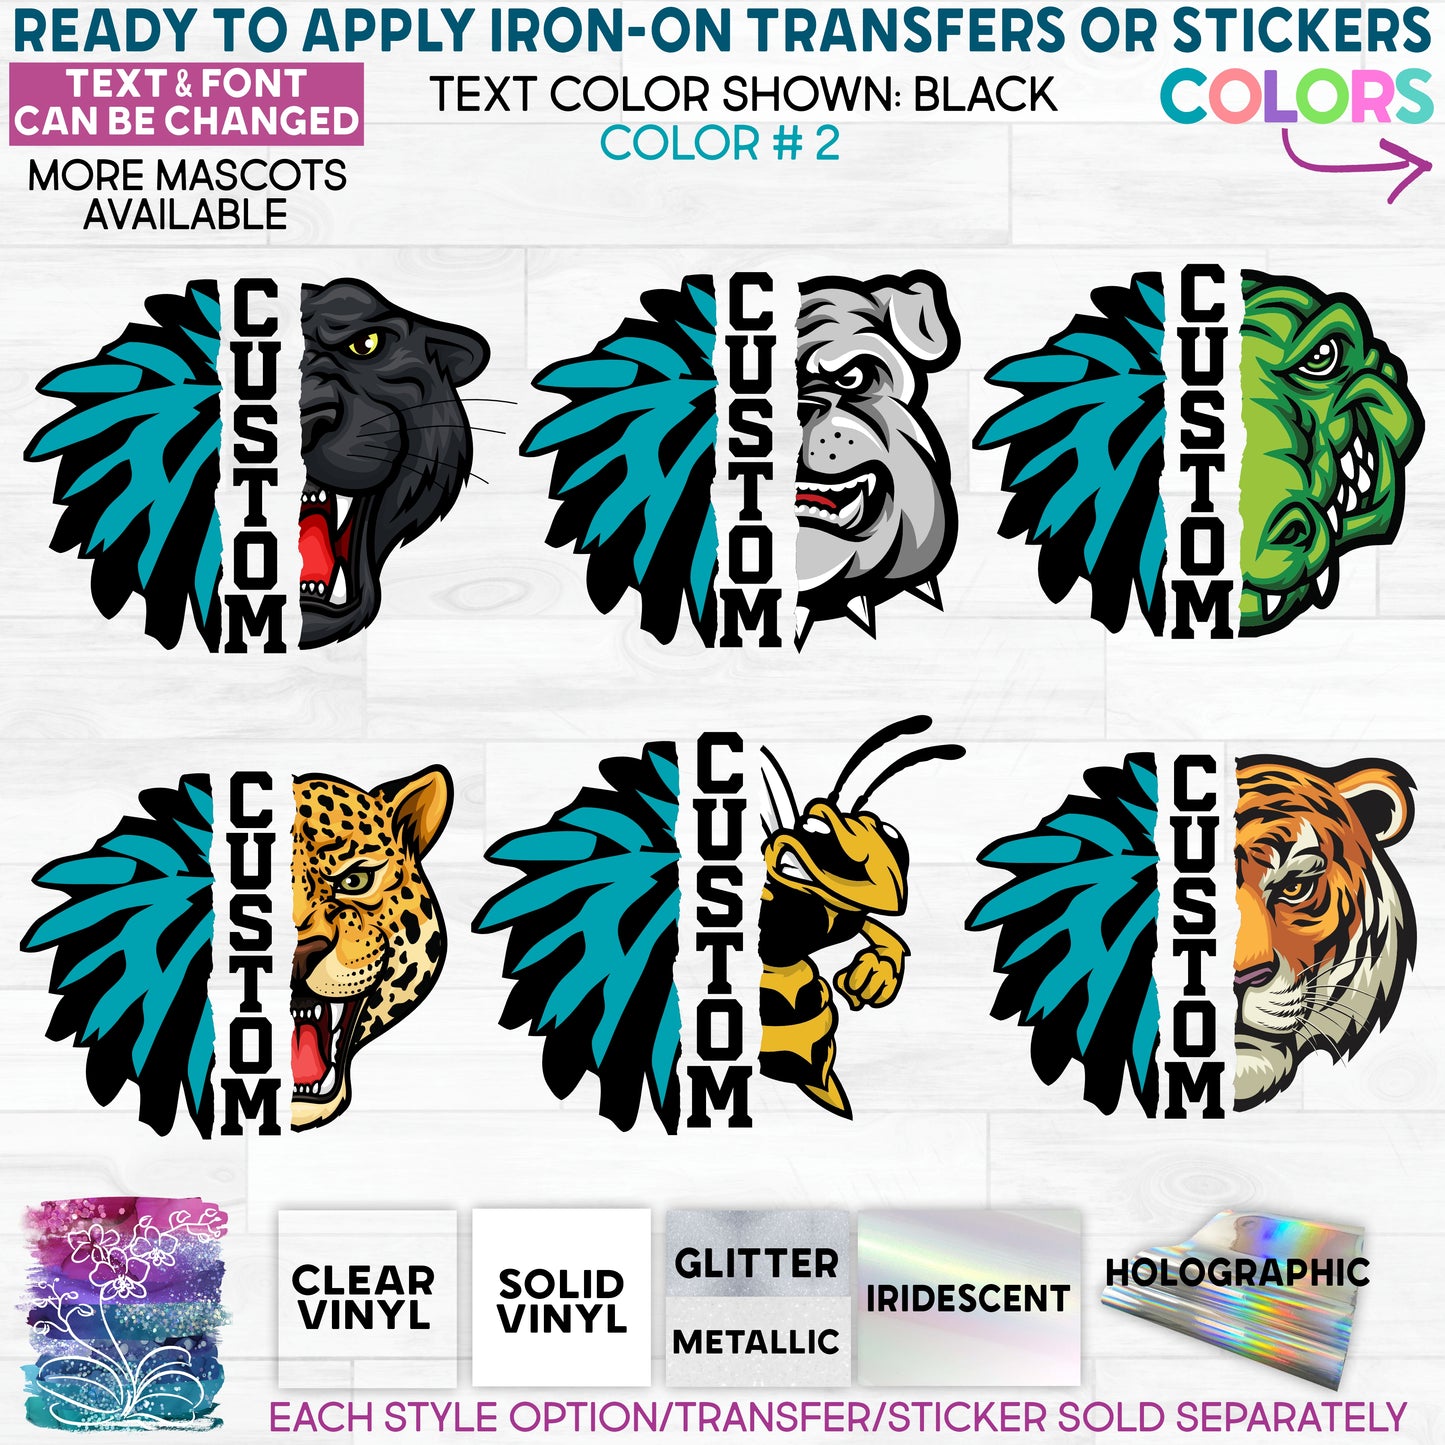 (s116-6) Split Cheer Pom Pom Mascot Team Glitter or Vinyl Iron-On Transfer or Sticker